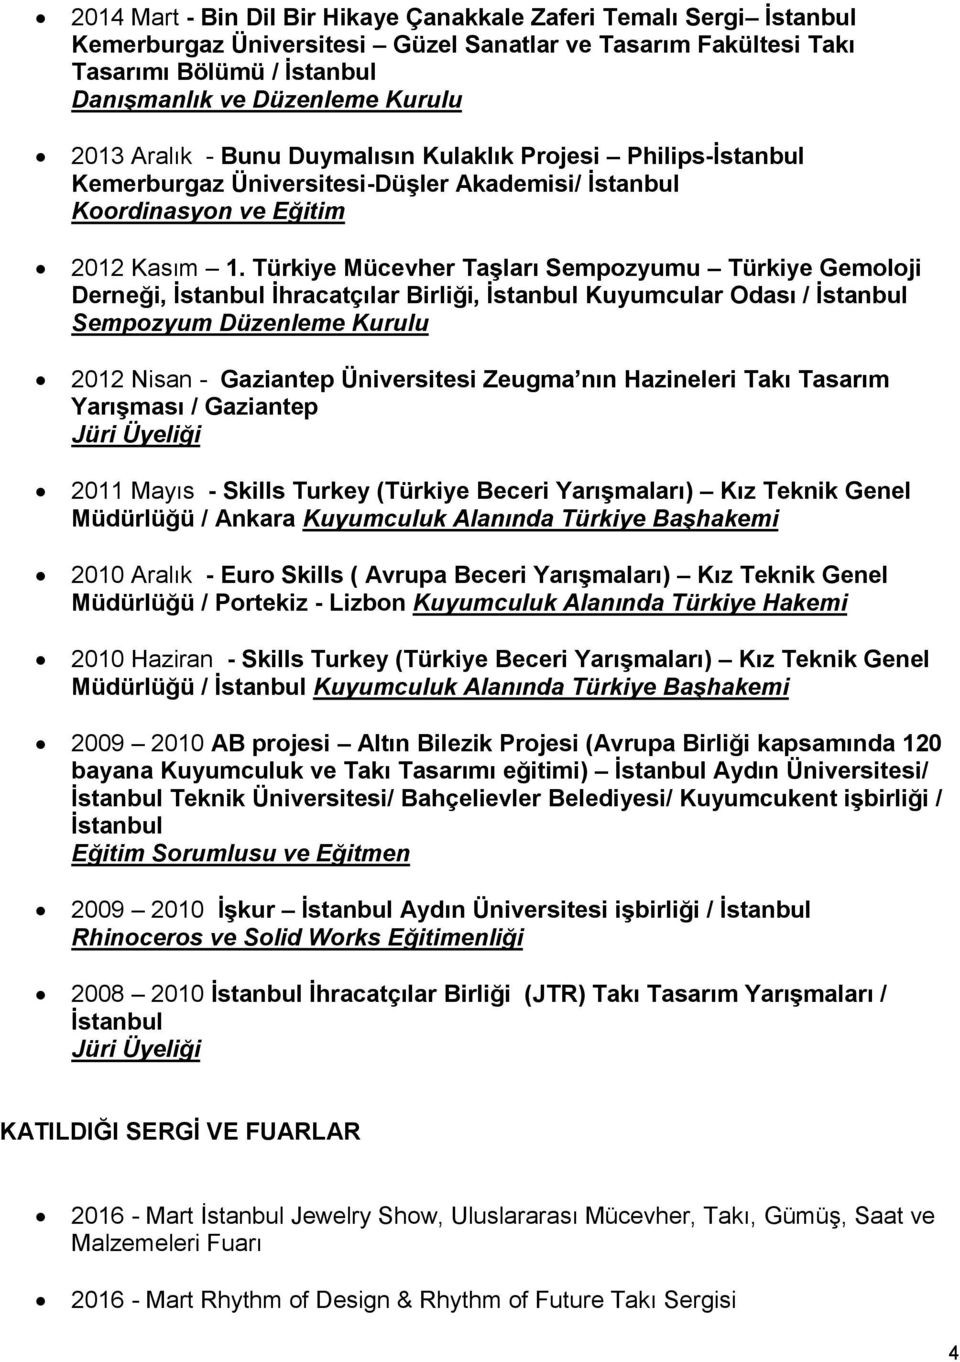 Türkiye Mücevher Taşları Sempozyumu Türkiye Gemoloji Derneği, İhracatçılar Birliği, Kuyumcular Odası / Sempozyum Düzenleme Kurulu 2012 Nisan - Gaziantep Üniversitesi Zeugma nın Hazineleri Takı